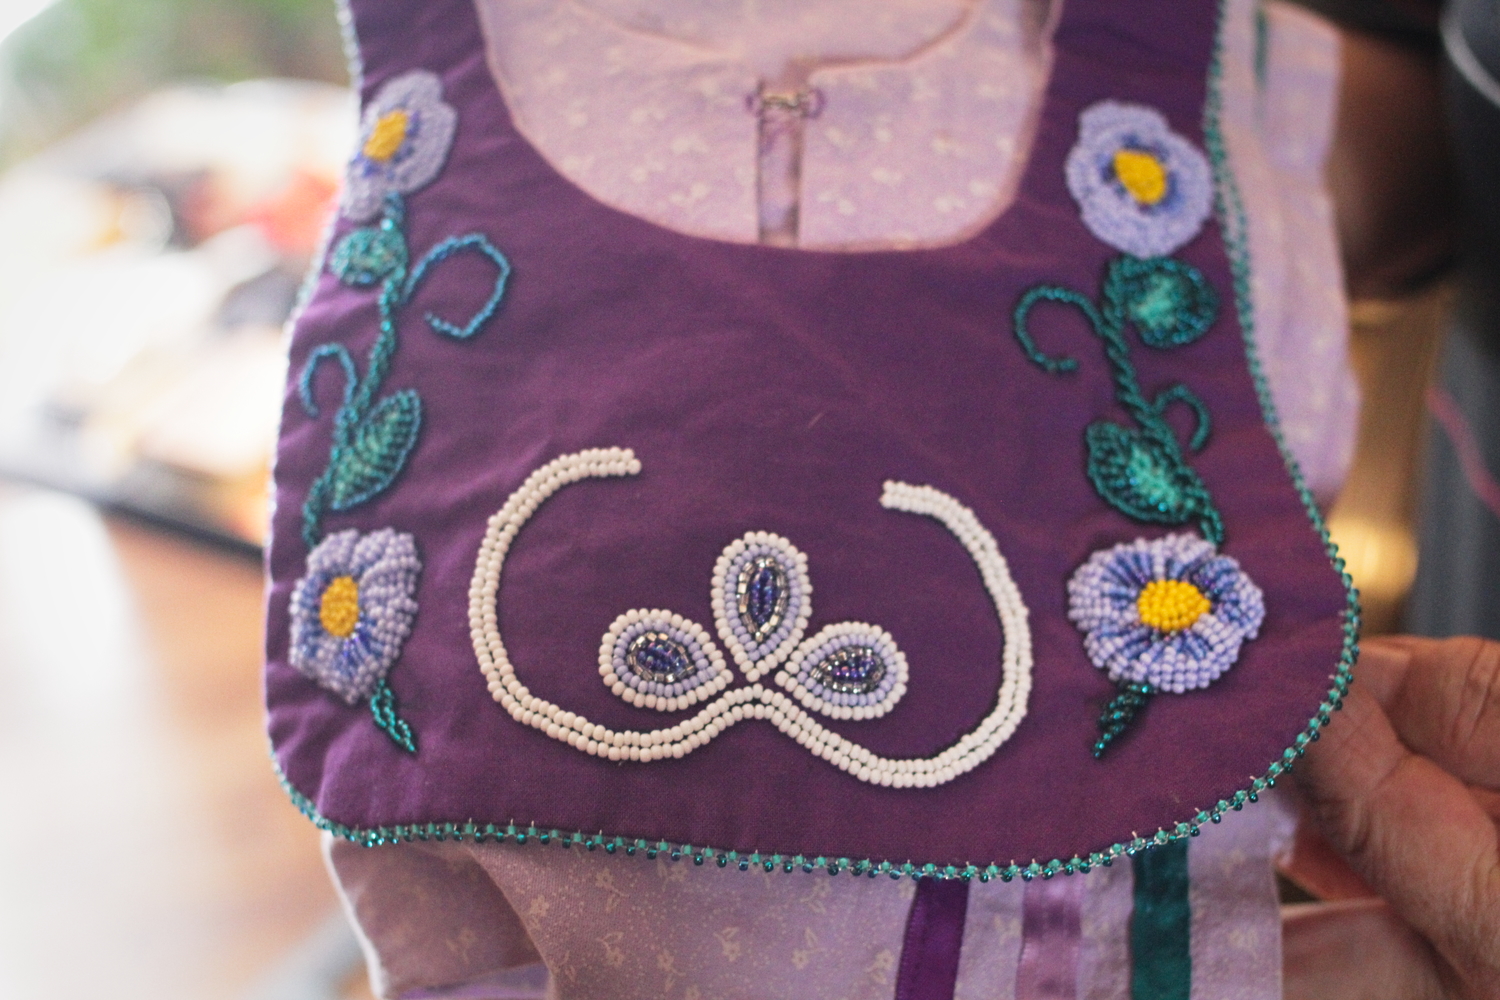 Une robe de perle tissée par Donna O’BOMSAWIN pour sa petite-fille, moitié Abénakise et moitié Mohawk. Les deux demi-cercles sont un symbole abénaki tandis que l’autre forme de tissage (plus épais) est mohawk.